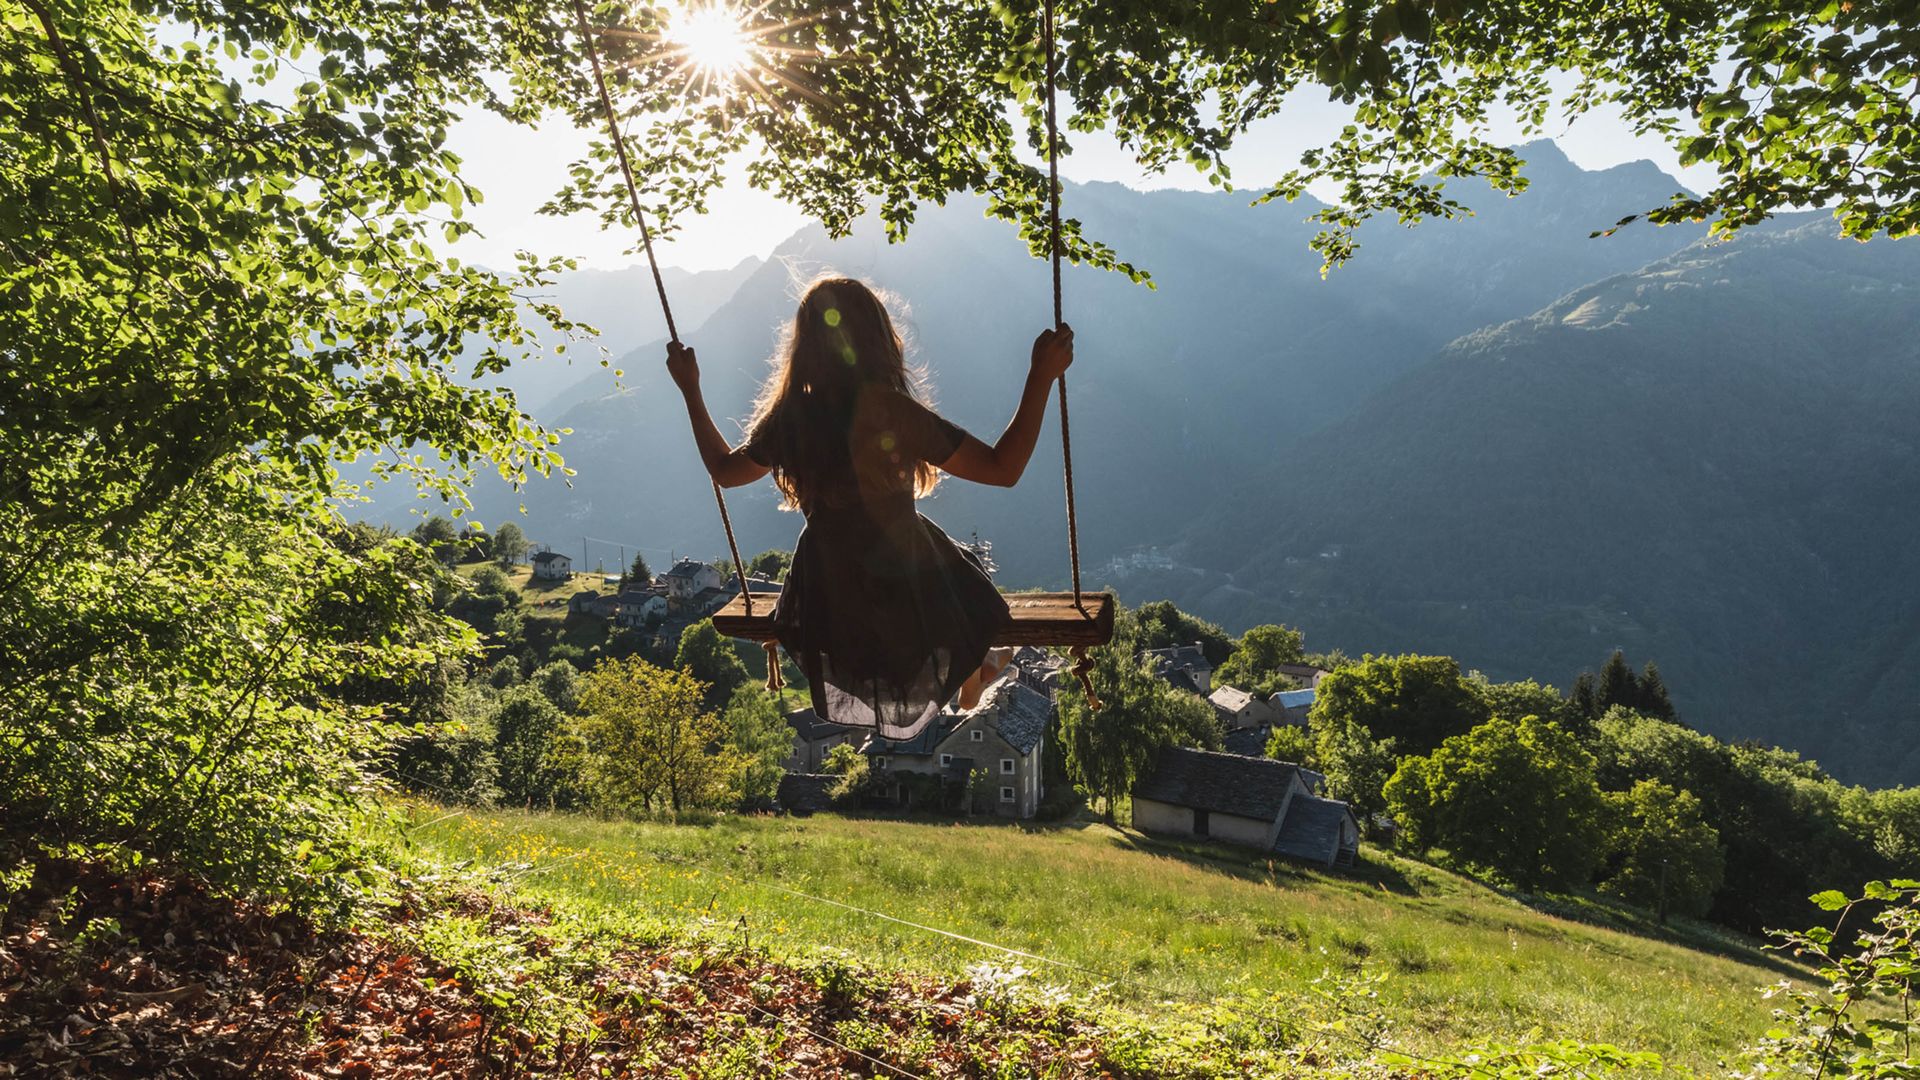 Una ragazza siede su un'altalena sotto grandi alberi. La vista è quella di un vecchio villaggio tipico del Ticino, con le sue case rustiche in pietra. Il sole splende attraverso le foglie degli alberi. 